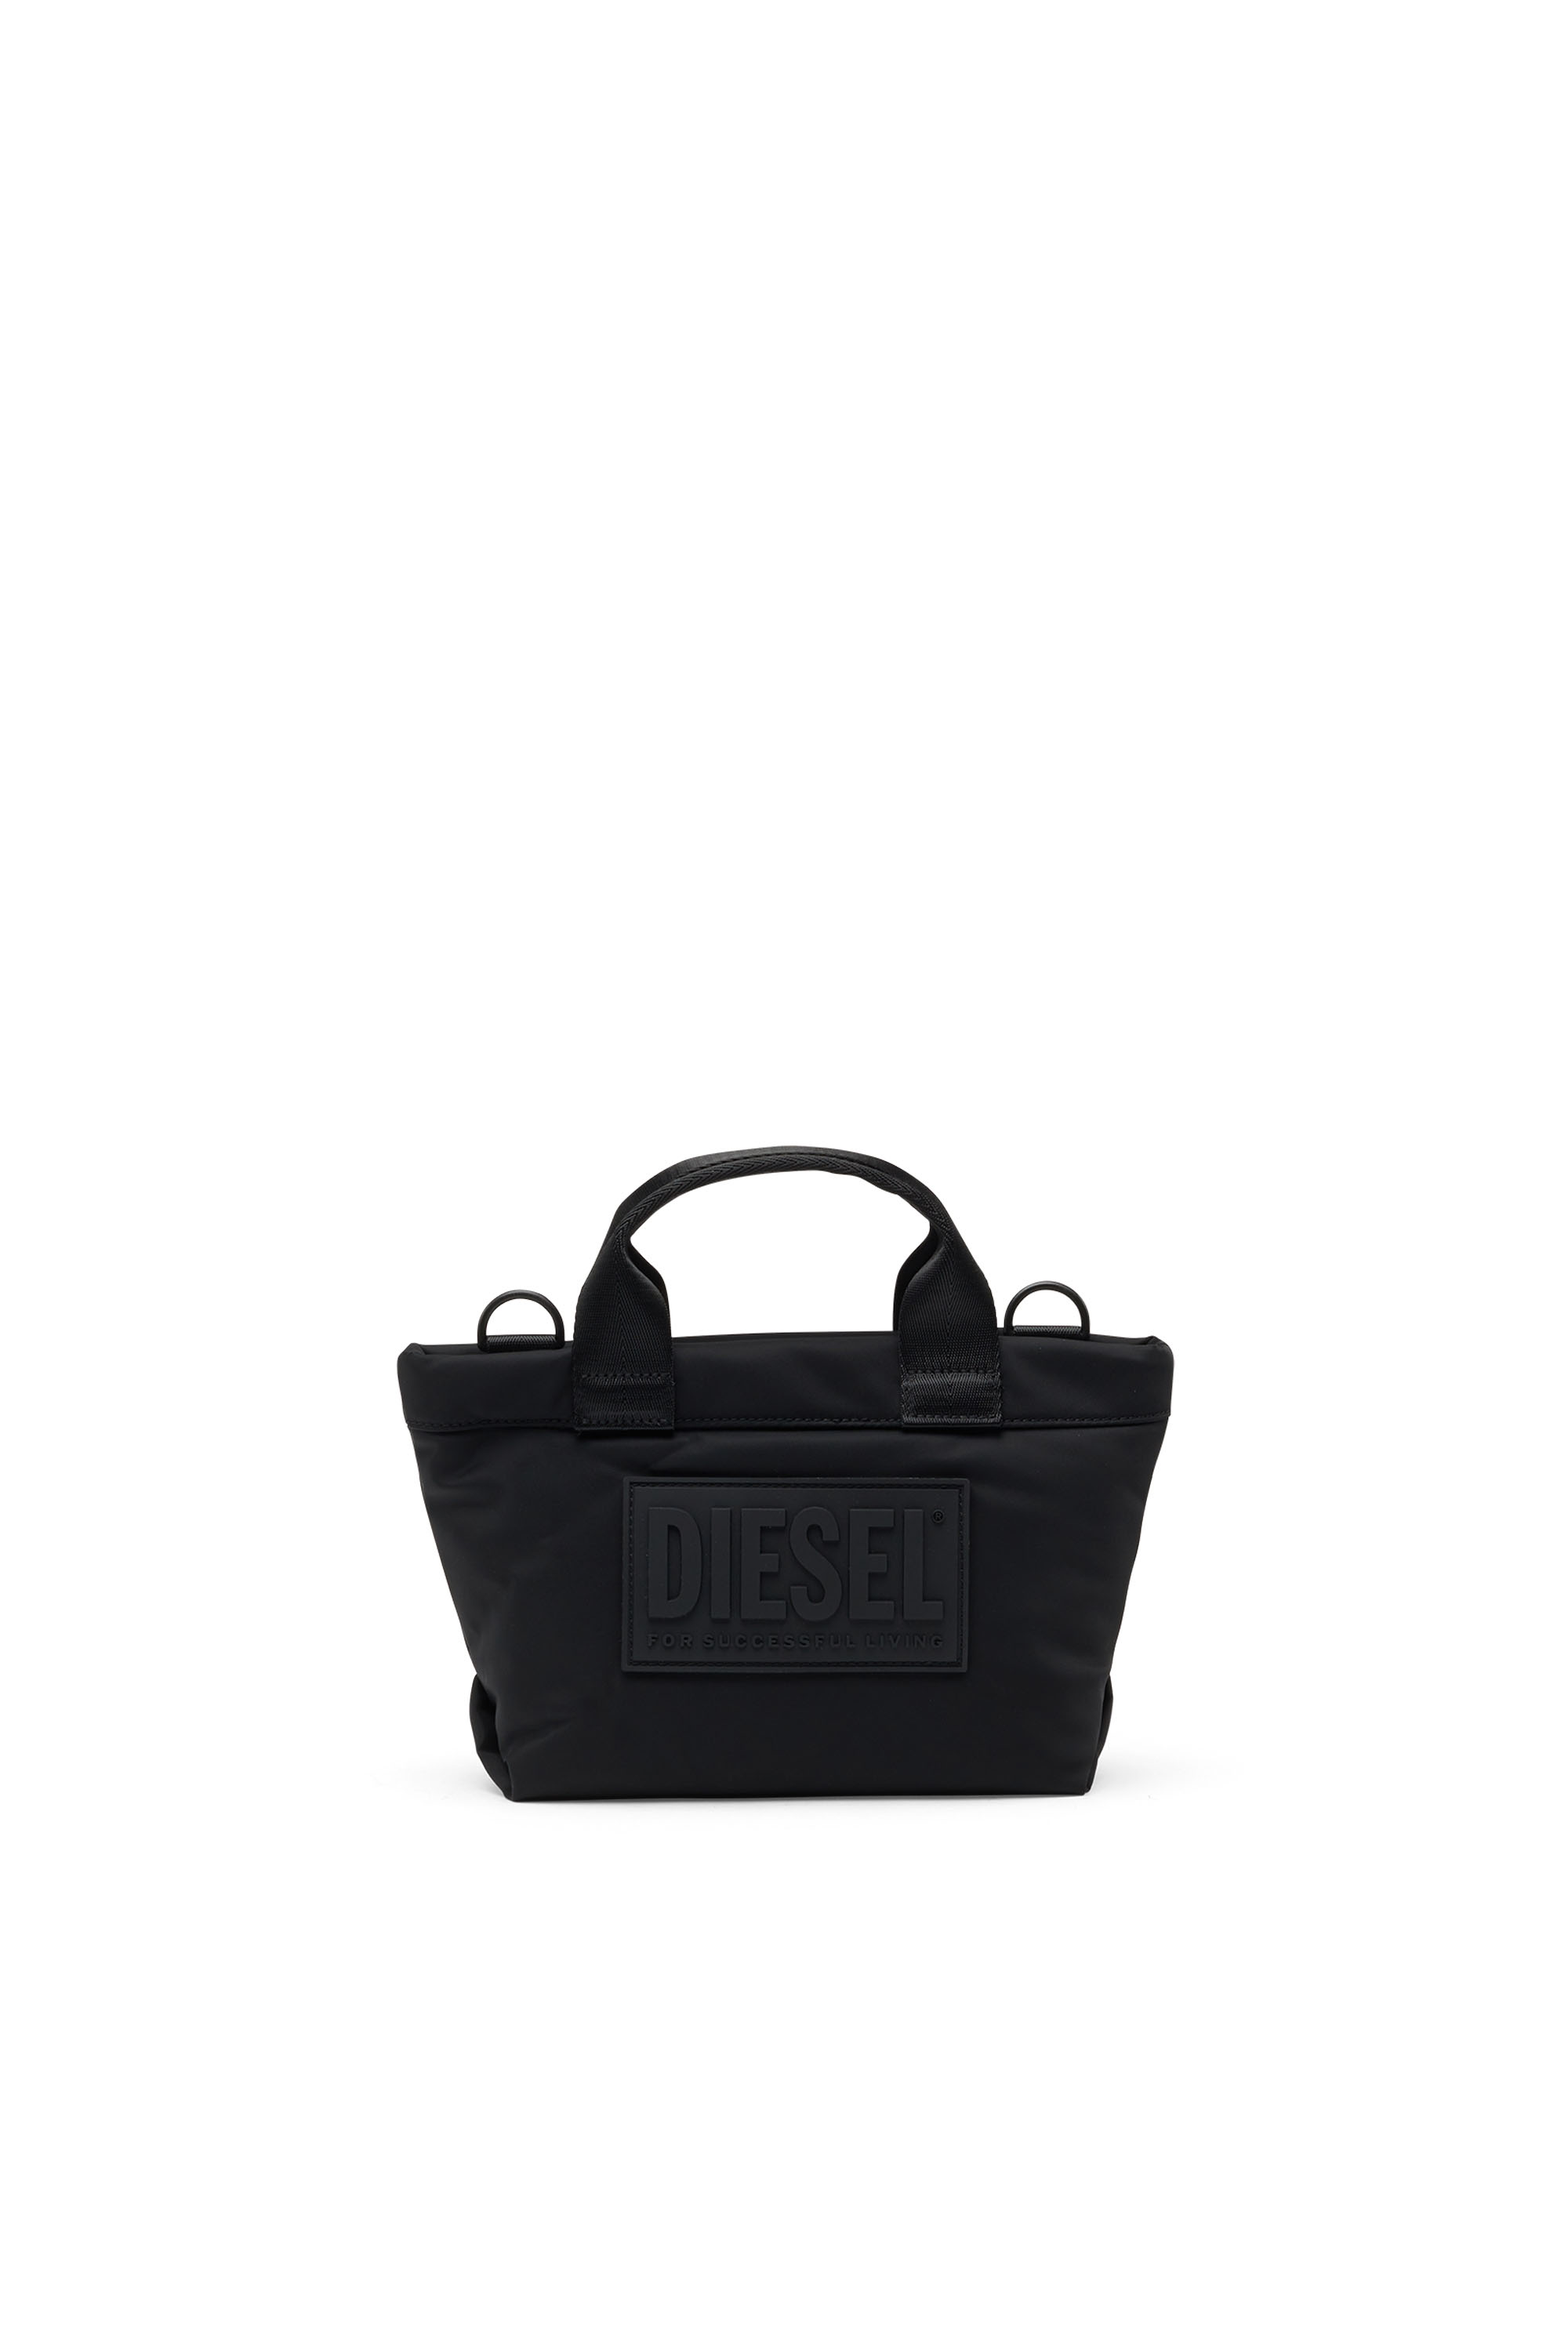 Diesel - HANDYEB55, Black - Image 1